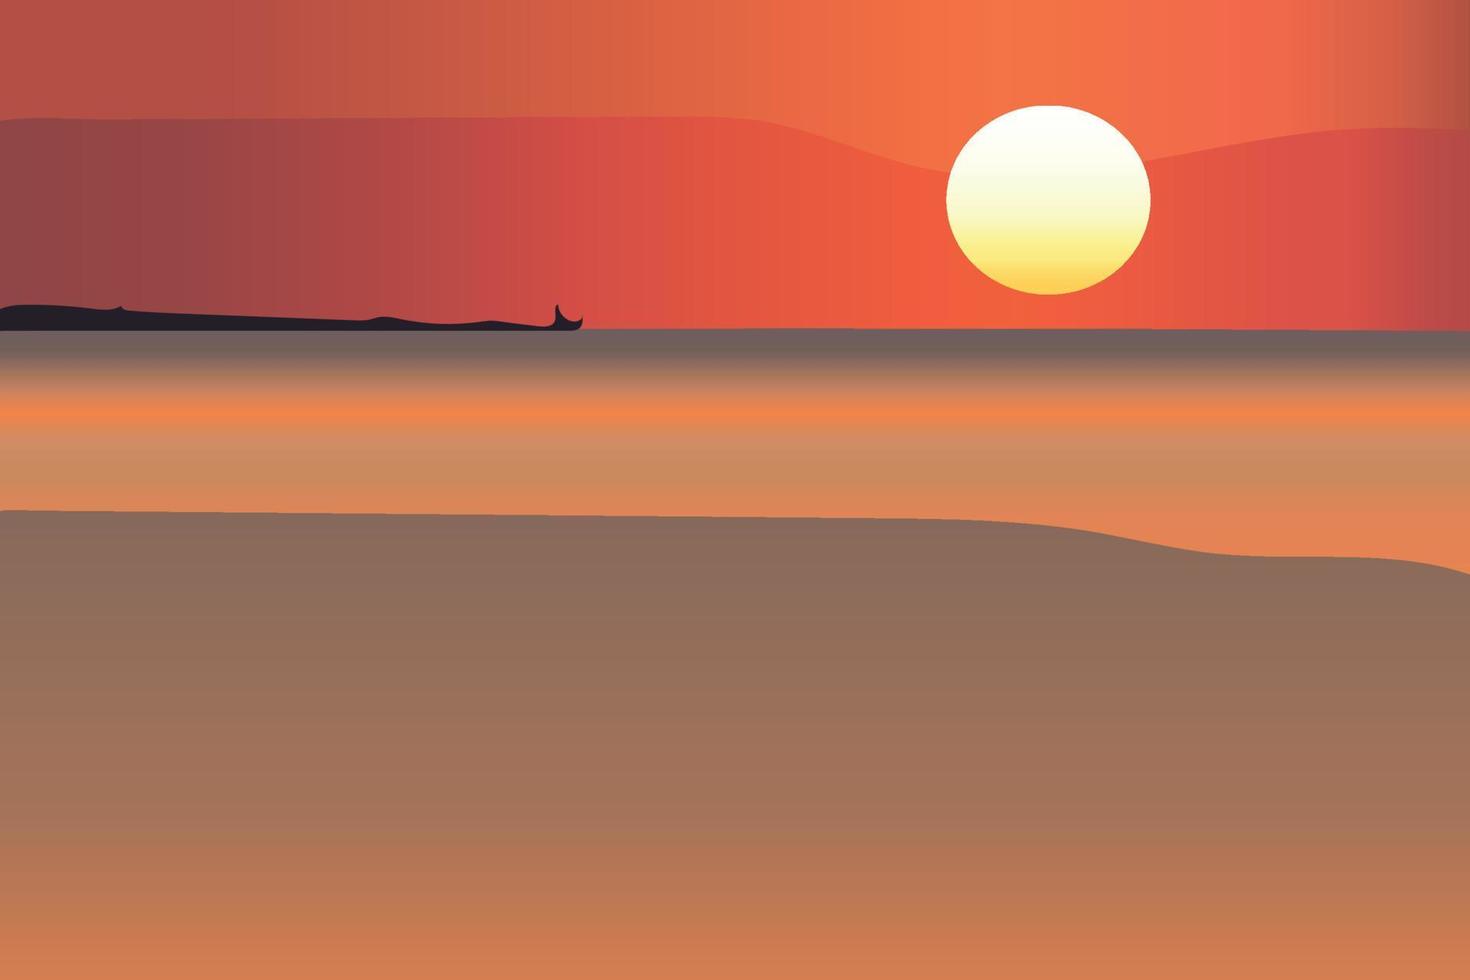 zonsondergang op het strand. zonsondergang met oranje zee, wolken in oranjerode lucht, silhouet op zwarte heuvels. vector